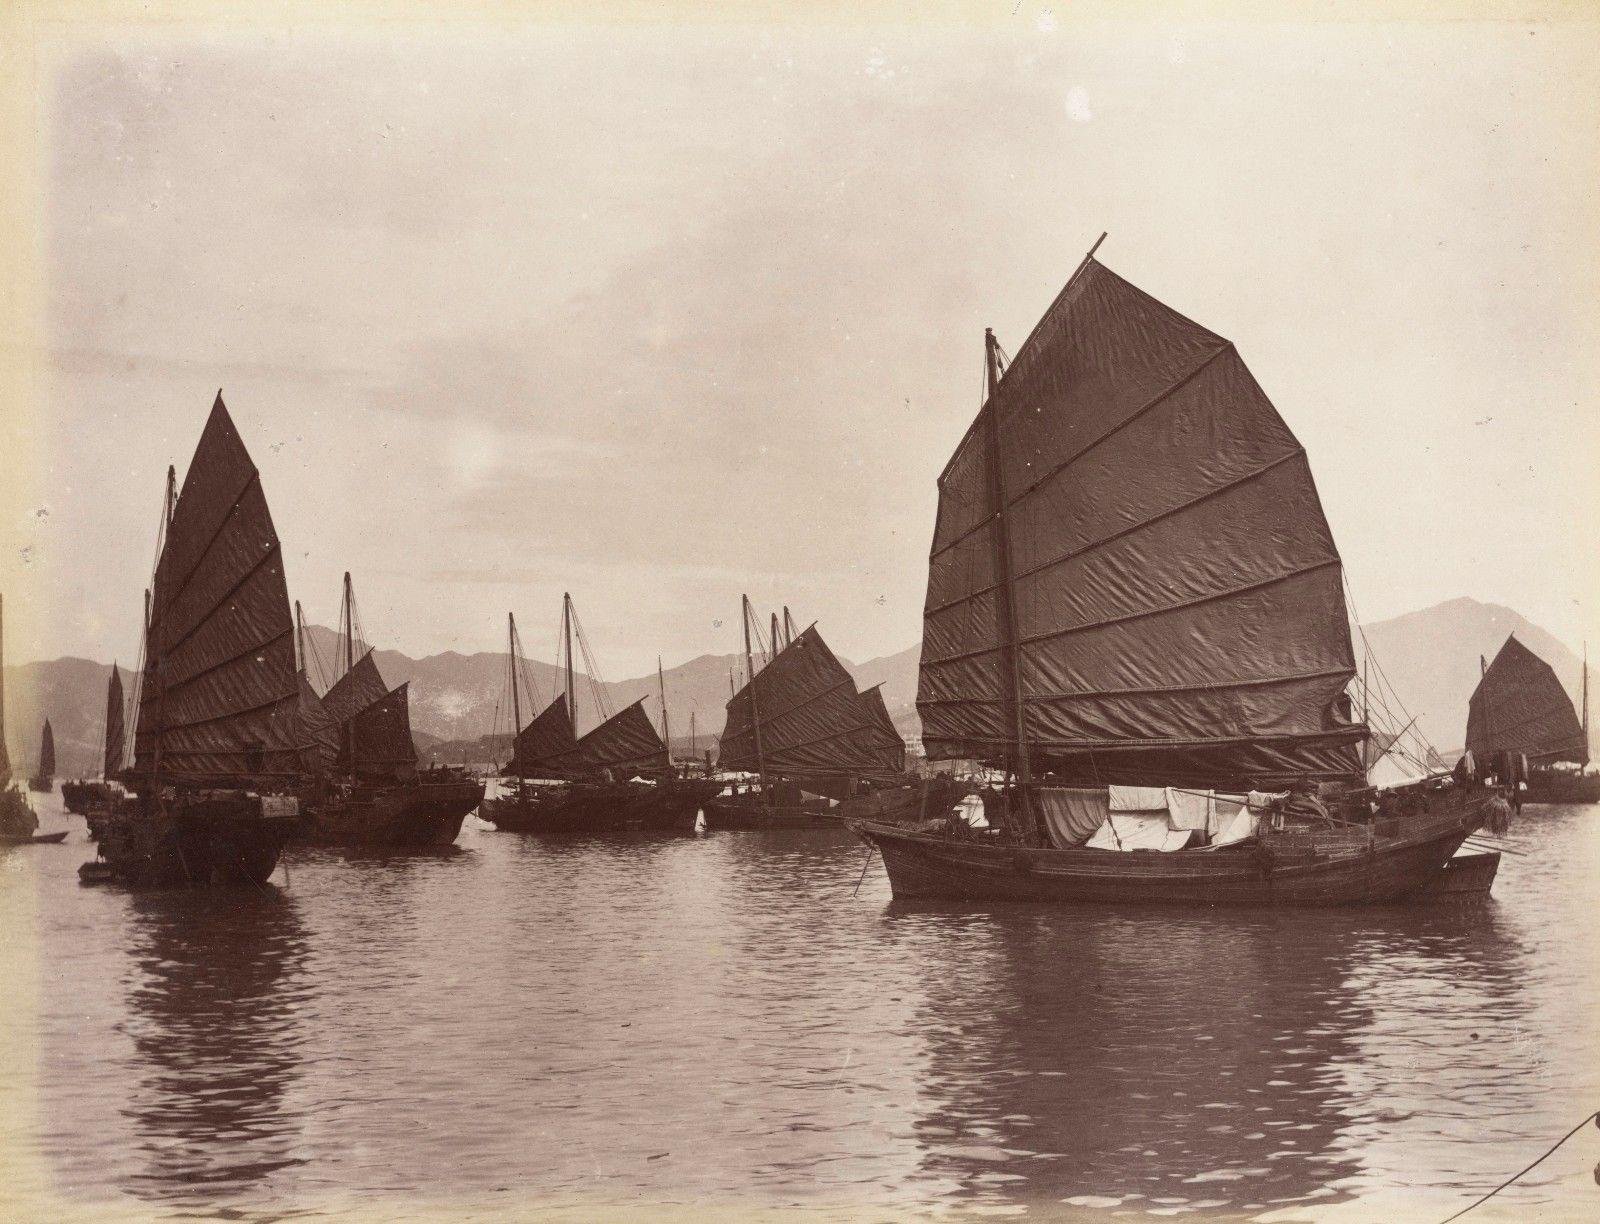 Uma fotografia de juncos em Cantão por volta de 1880. (Fonte: Wikimedia Commons)